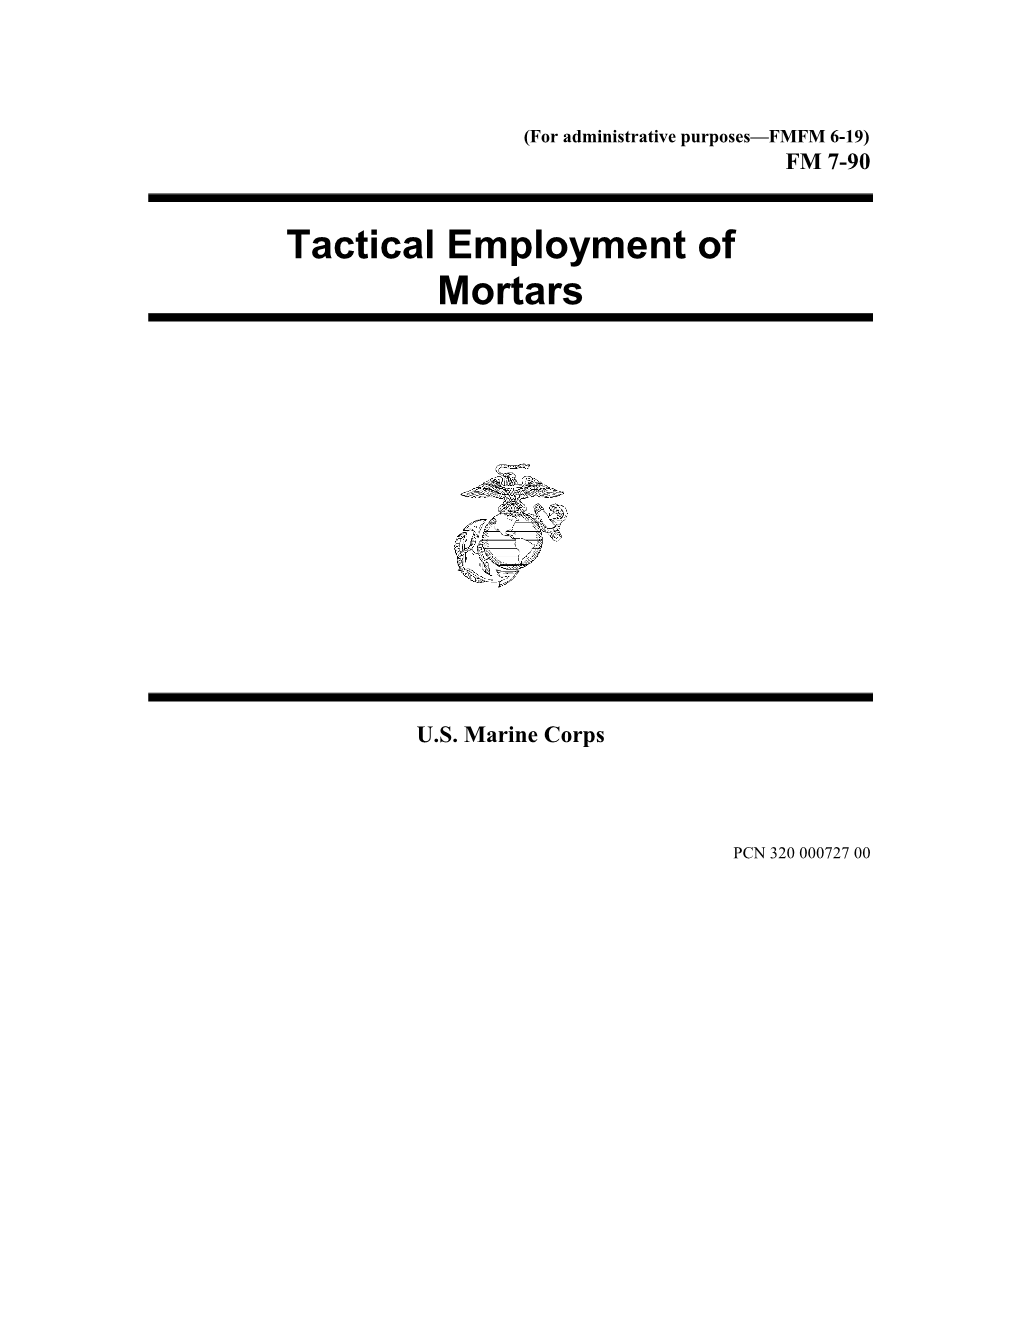 FMFM 6-19 Tactical Employment of Mortars